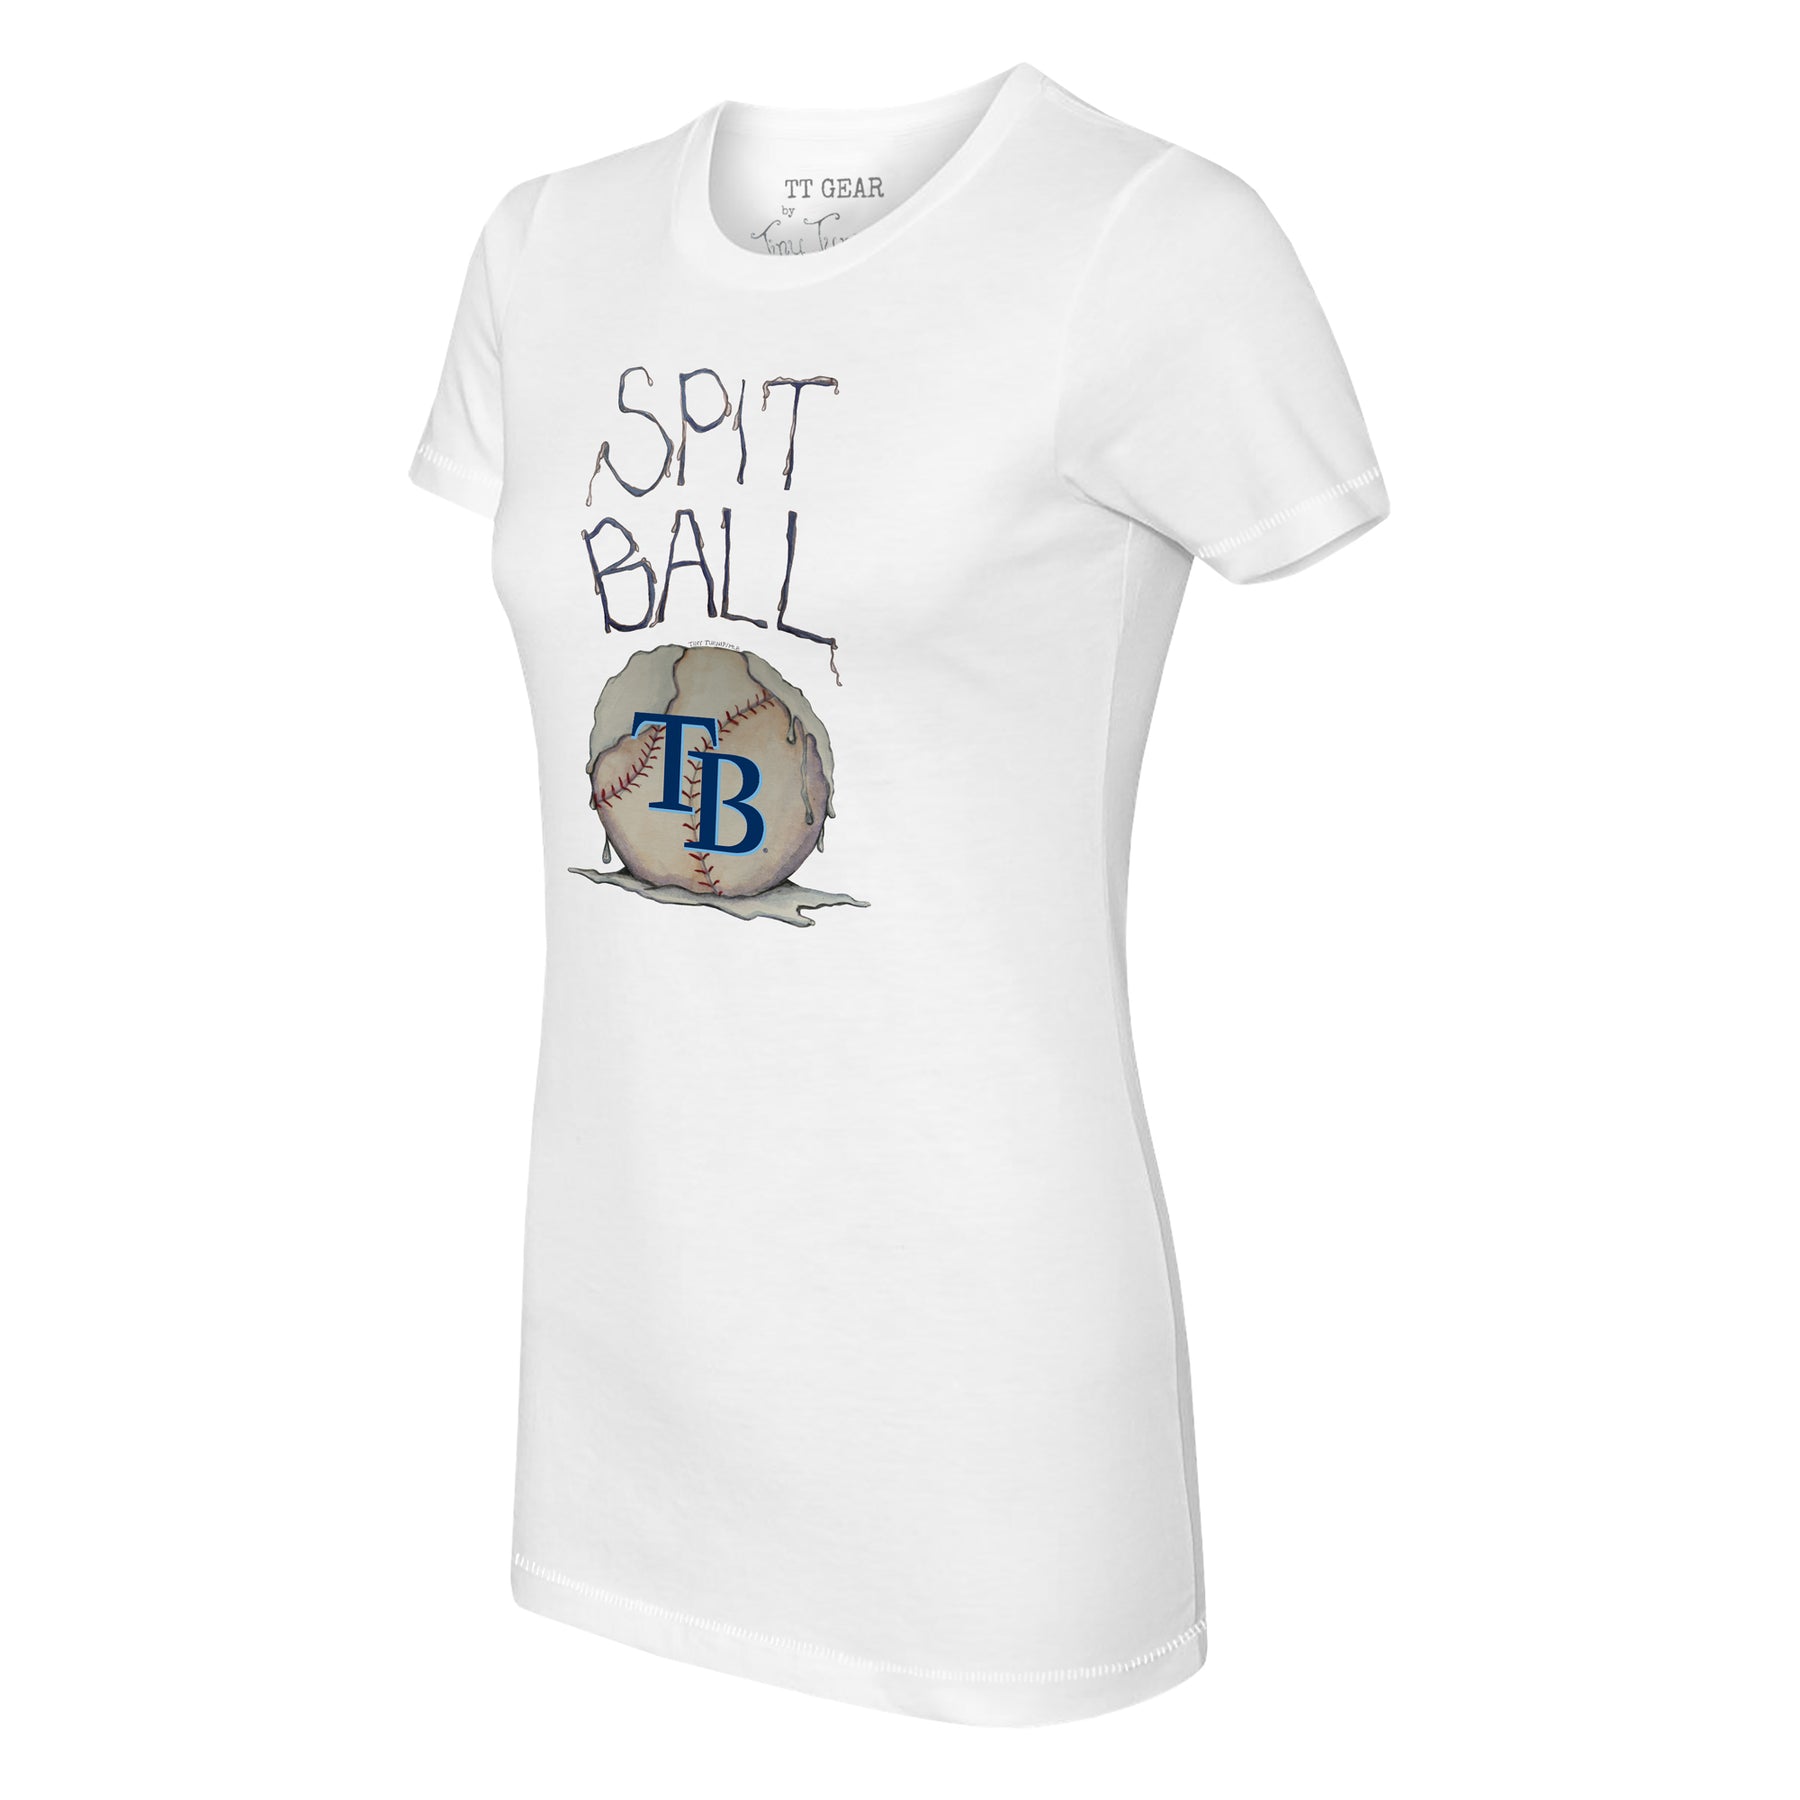 Tiny Turnip Tampa Bay Rays Baseball Love Tee Shirt Women's 2XL / White